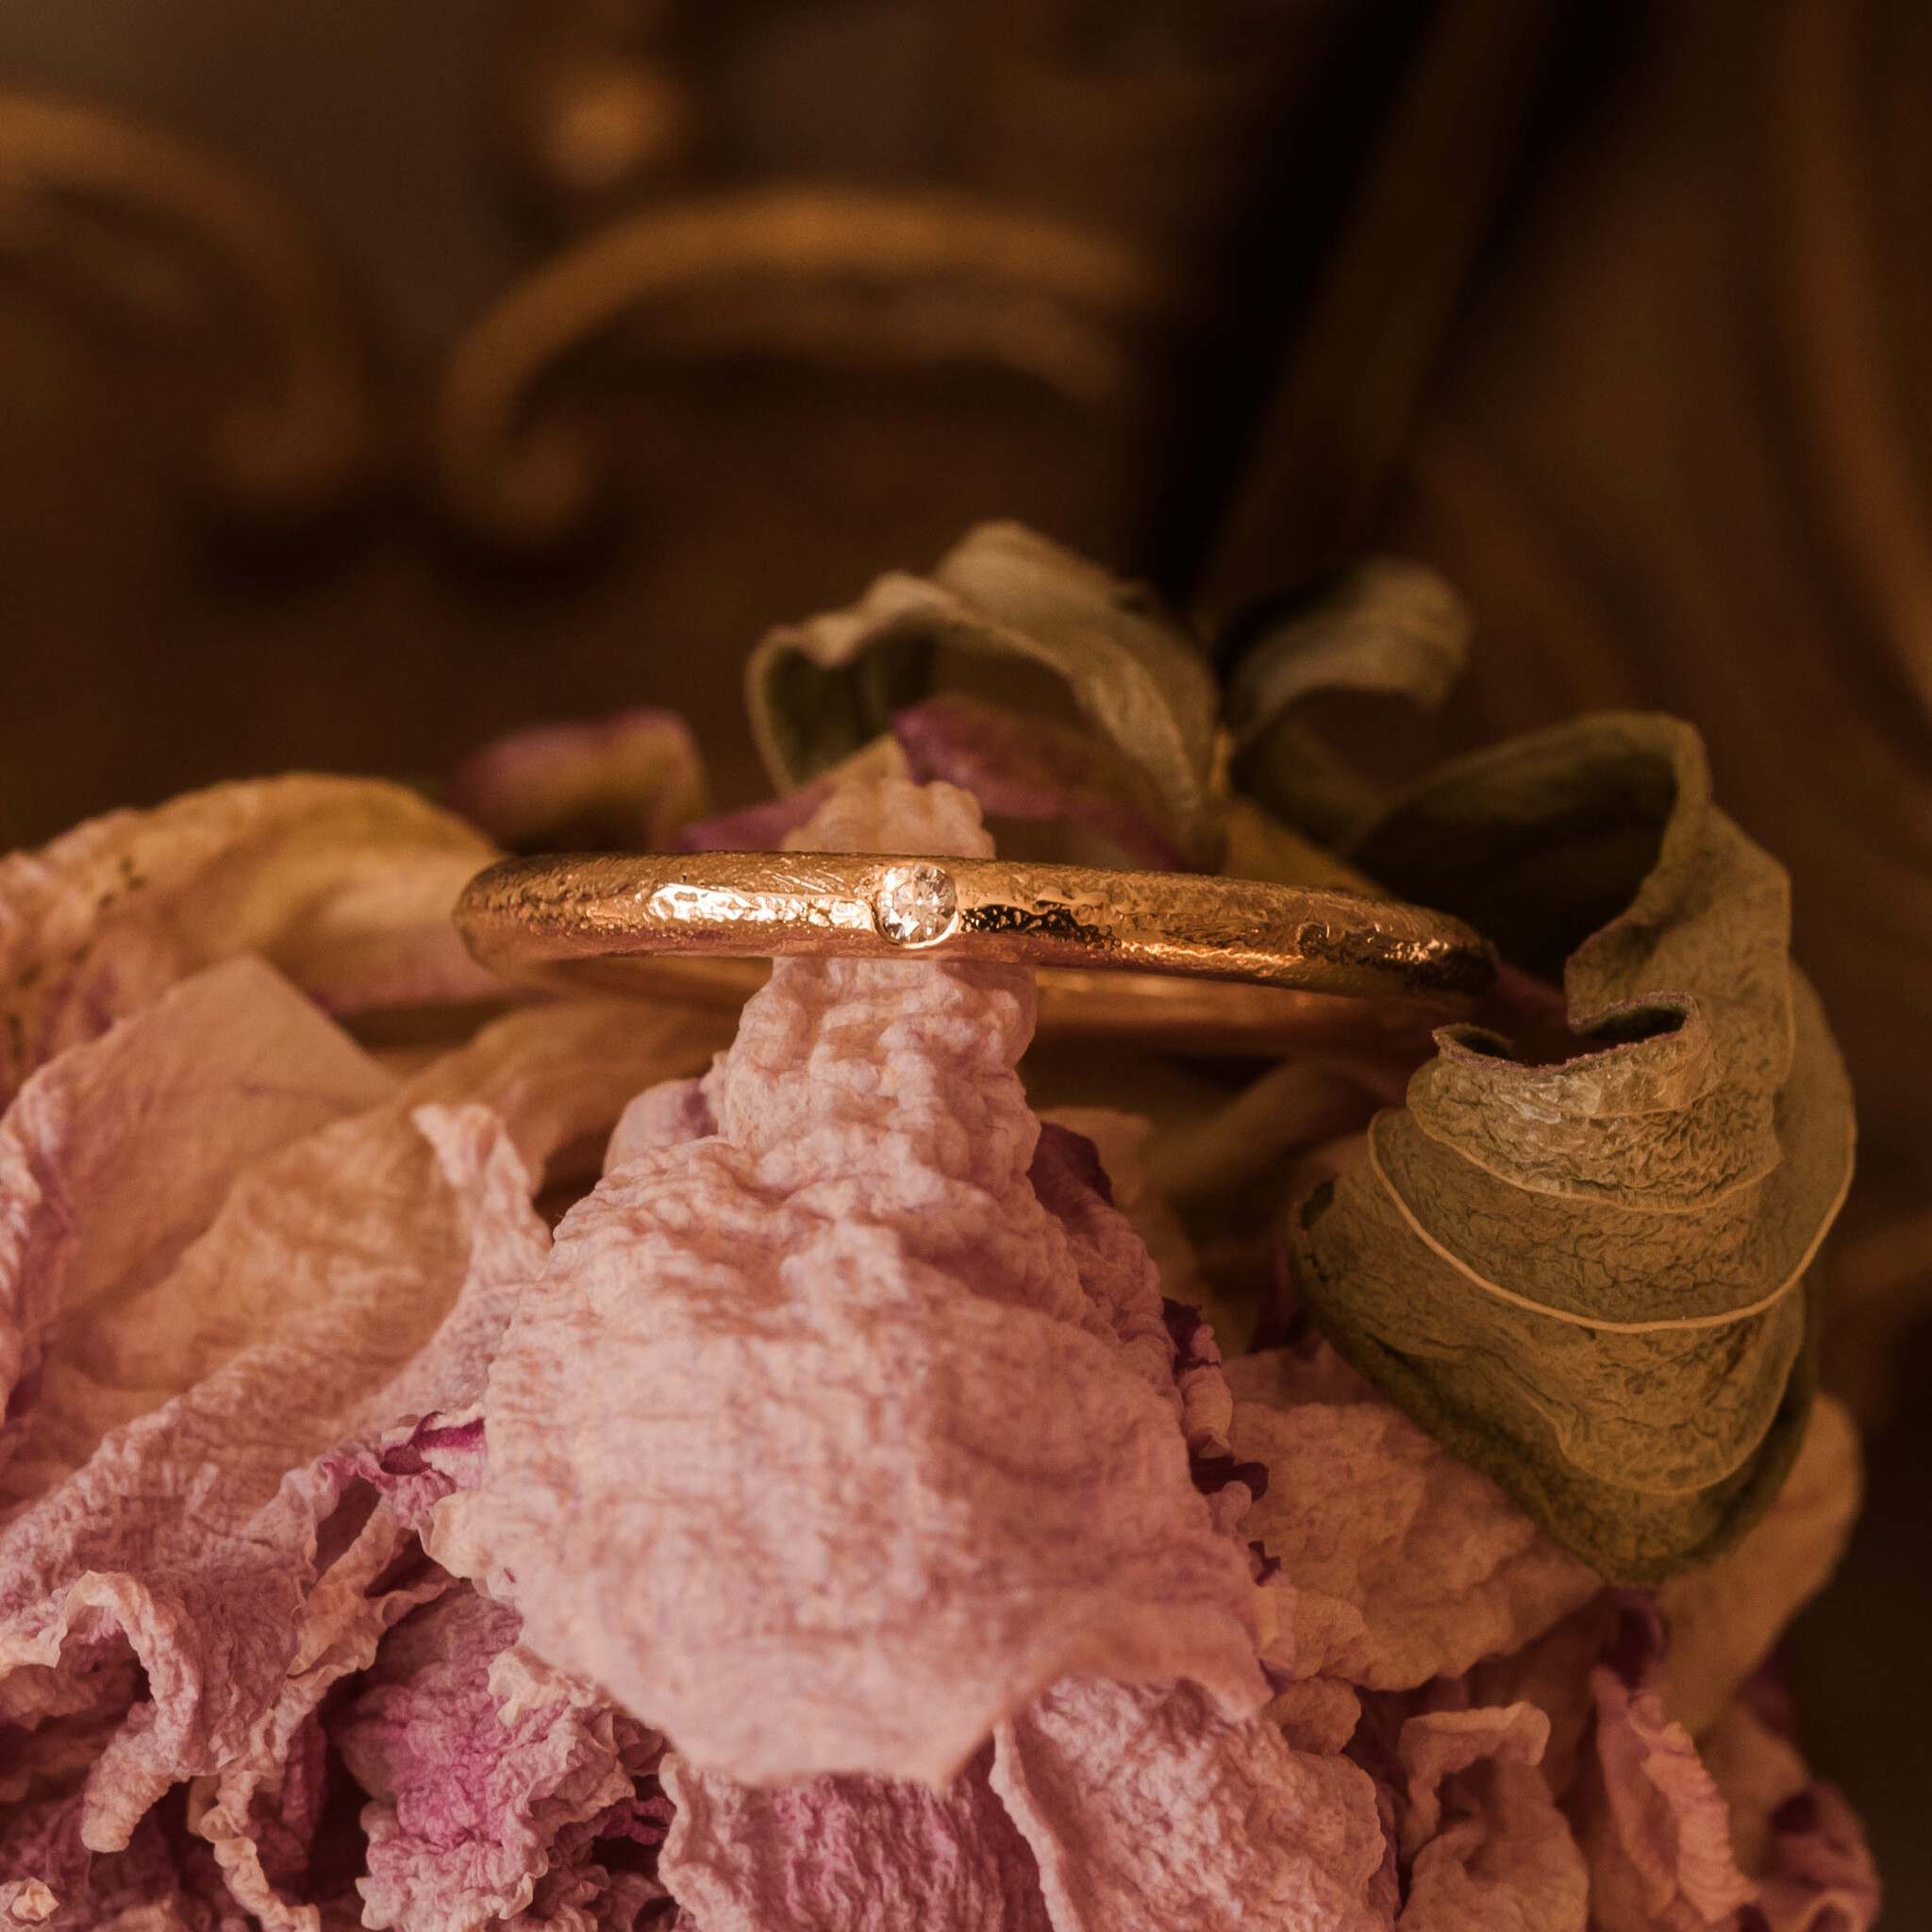 ''Midnattsstjärna'' Sandcasted gold ring with tw/vs diamond